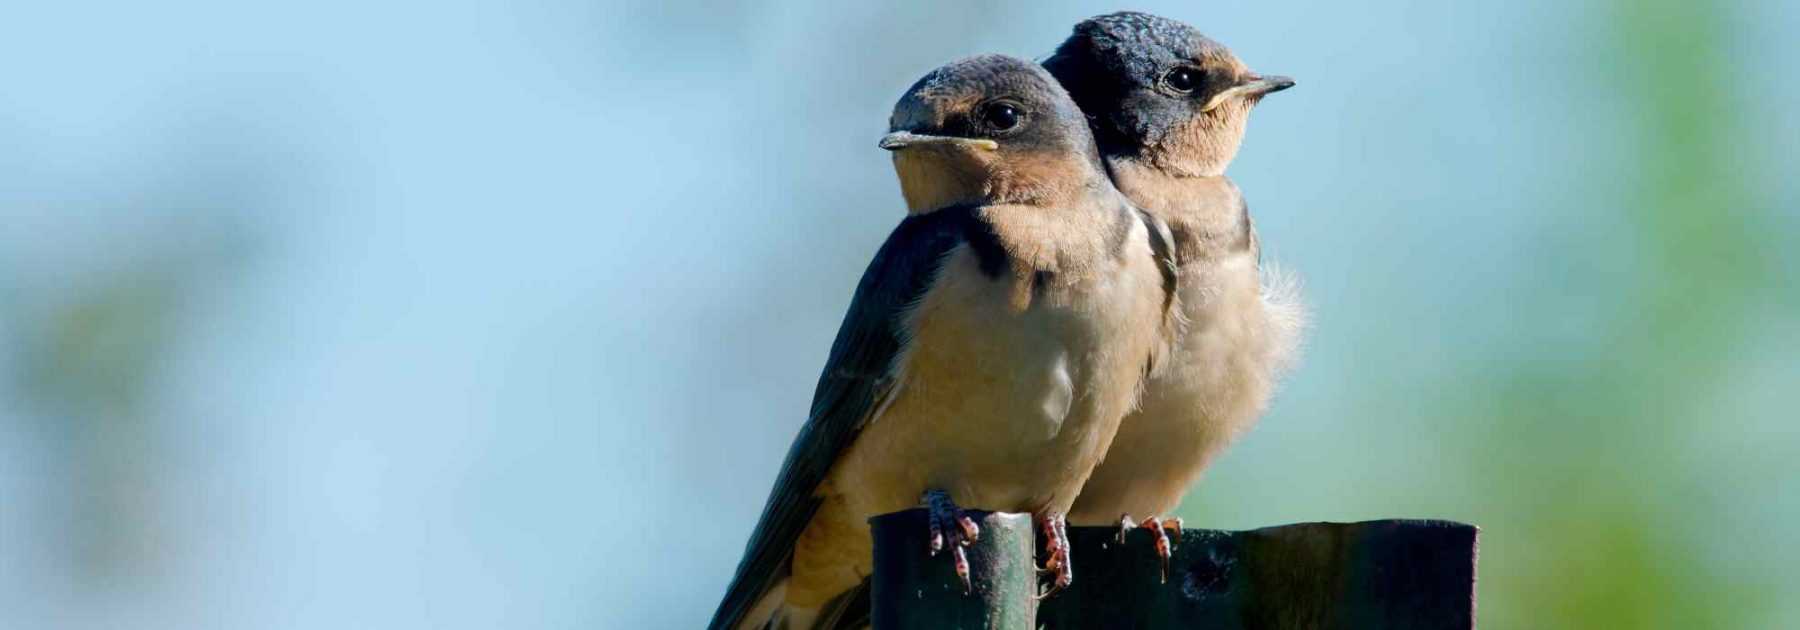 Calendrier les oiseaux de nos jardins (édition 2024) - Livres sur les  Animaux